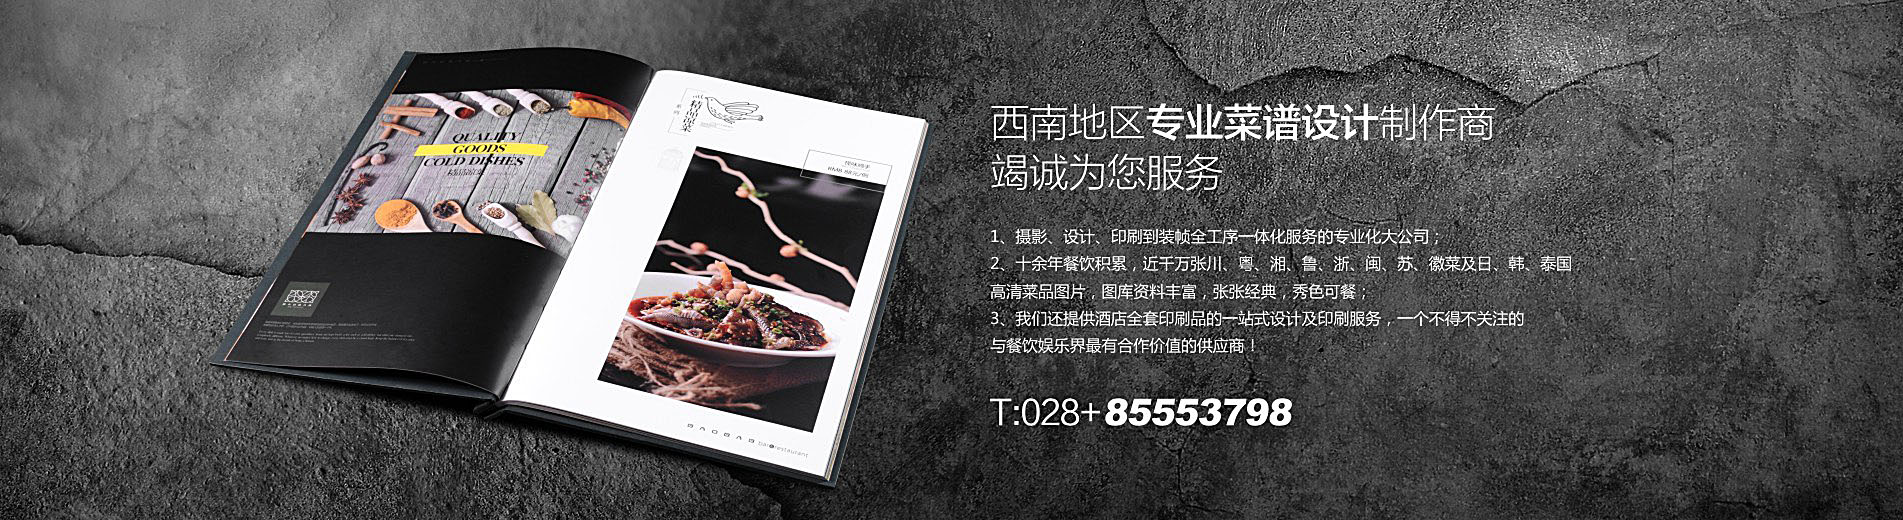 天上有港式粤菜餐厅菜谱制作-高端餐厅皮质菜单定制